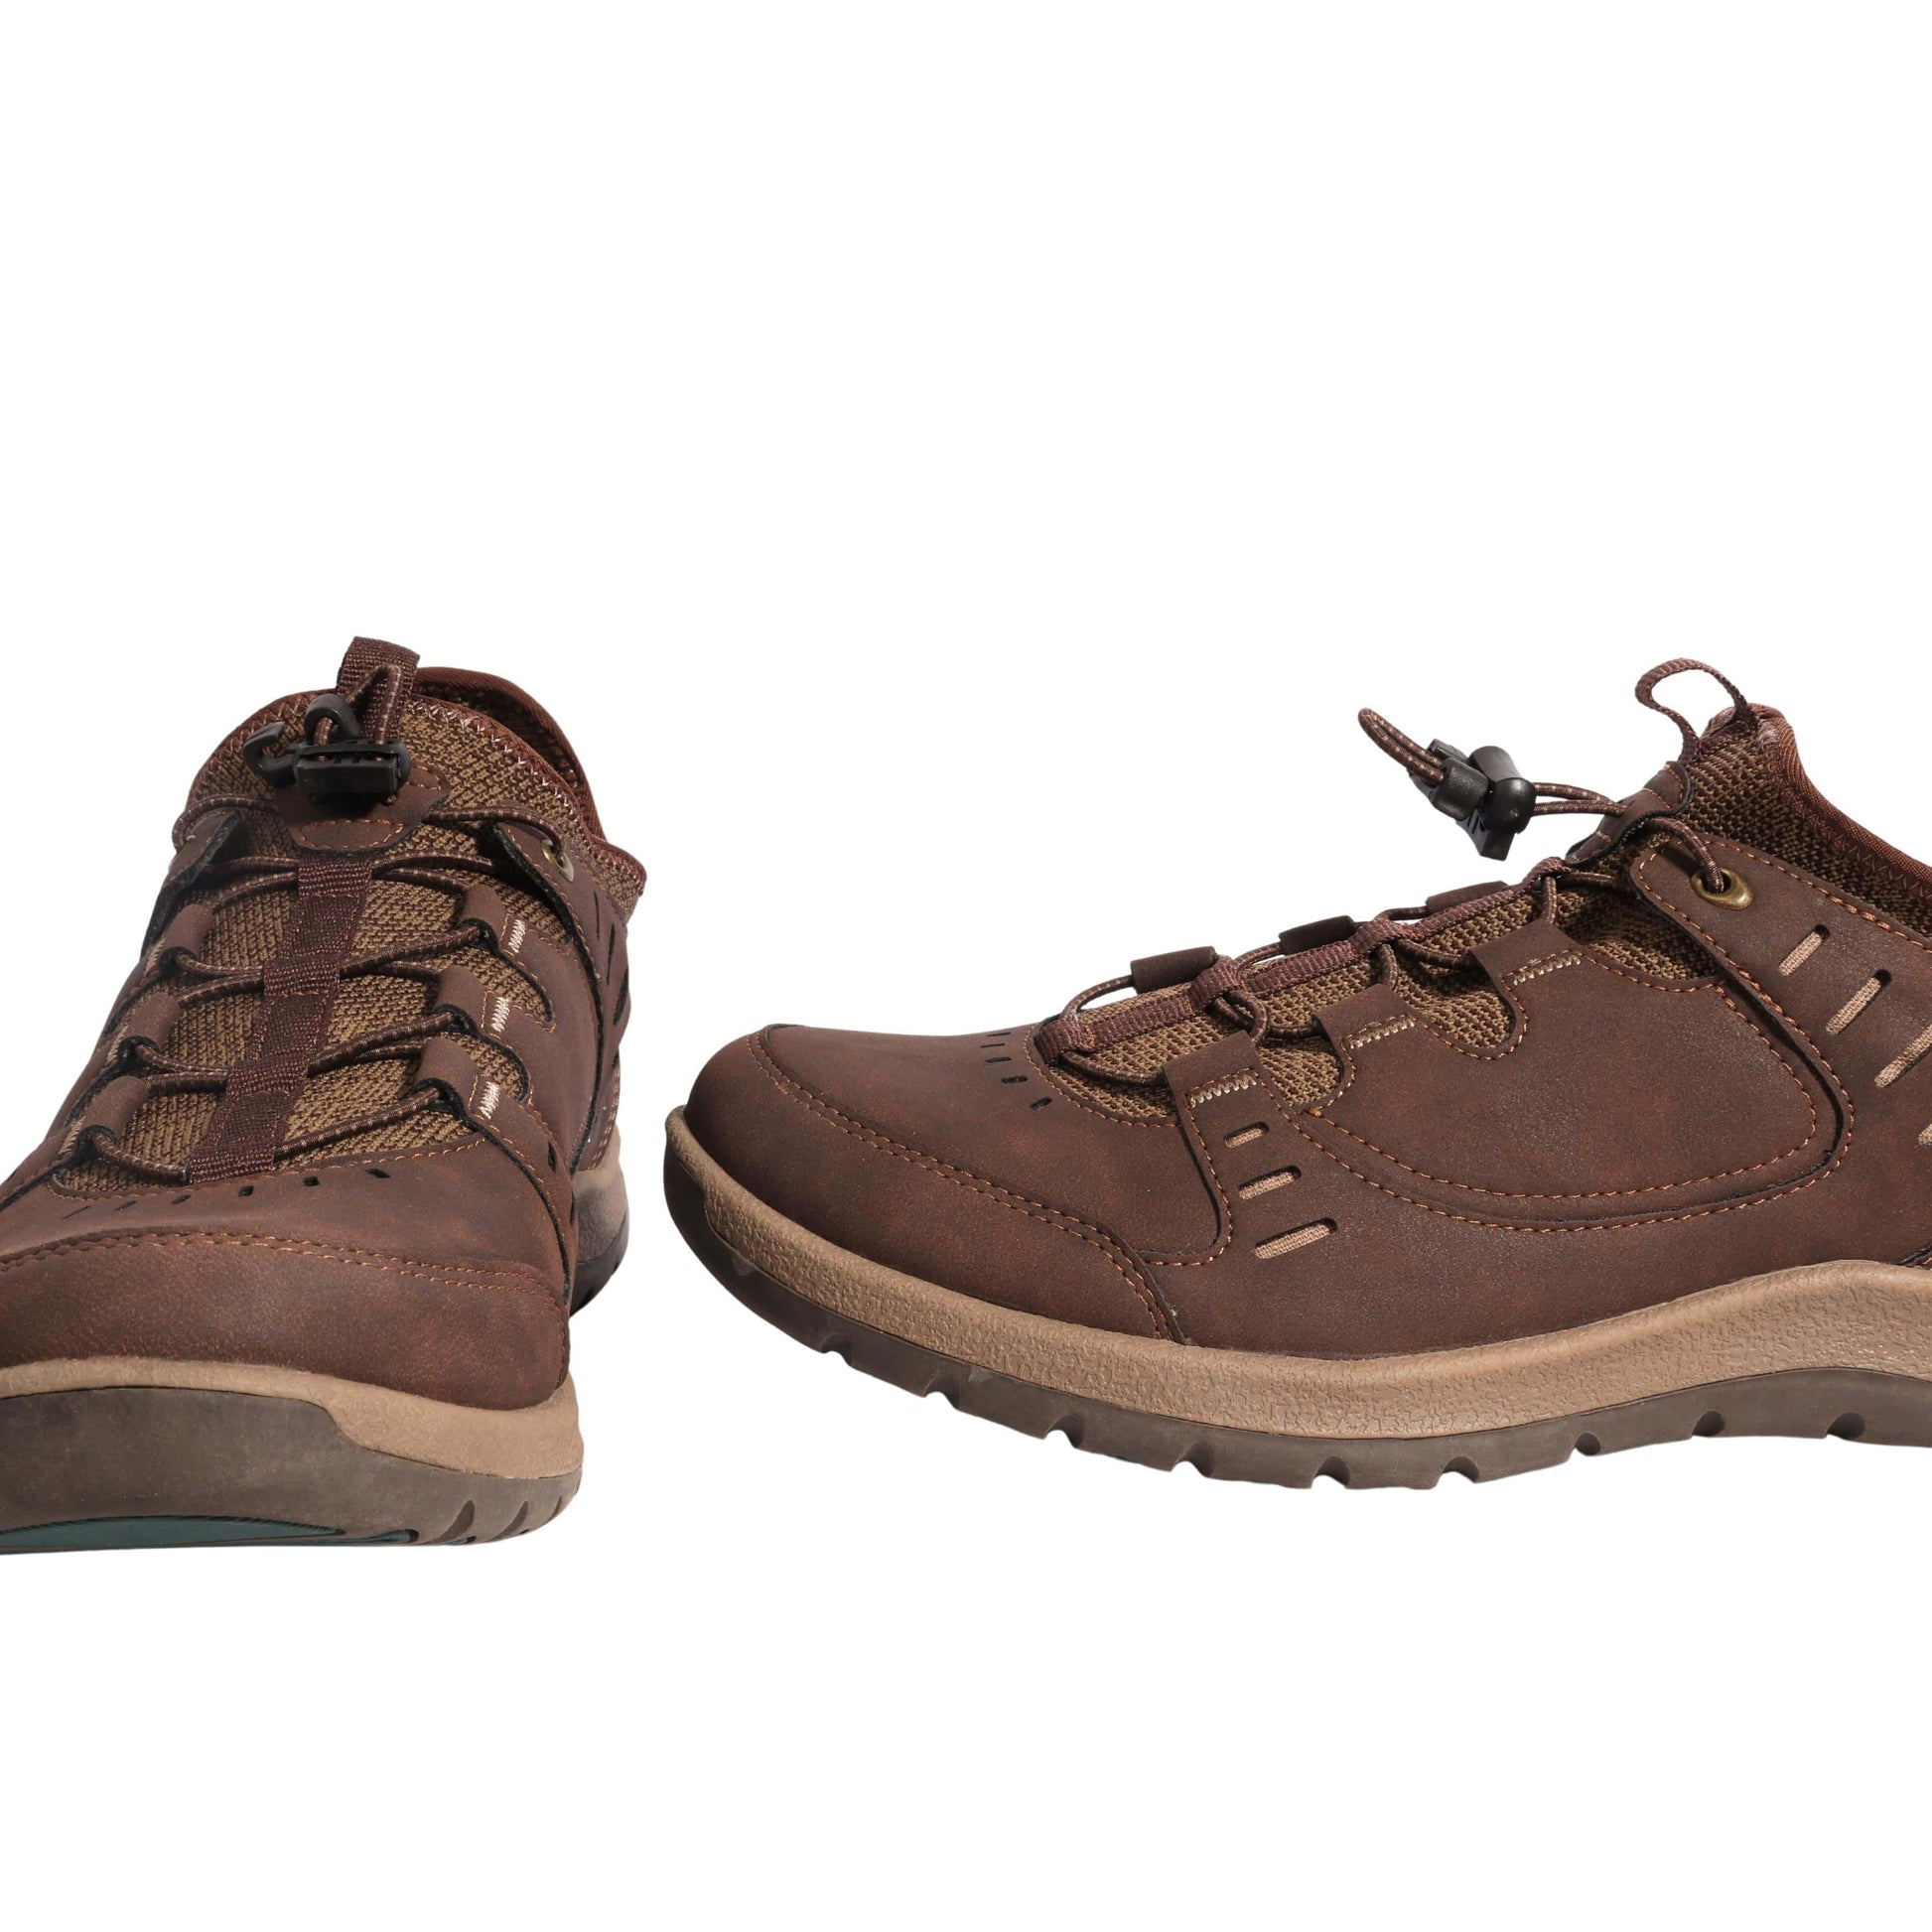 EASTLAND Mens Shoes EASTLAND - Hiking Boots